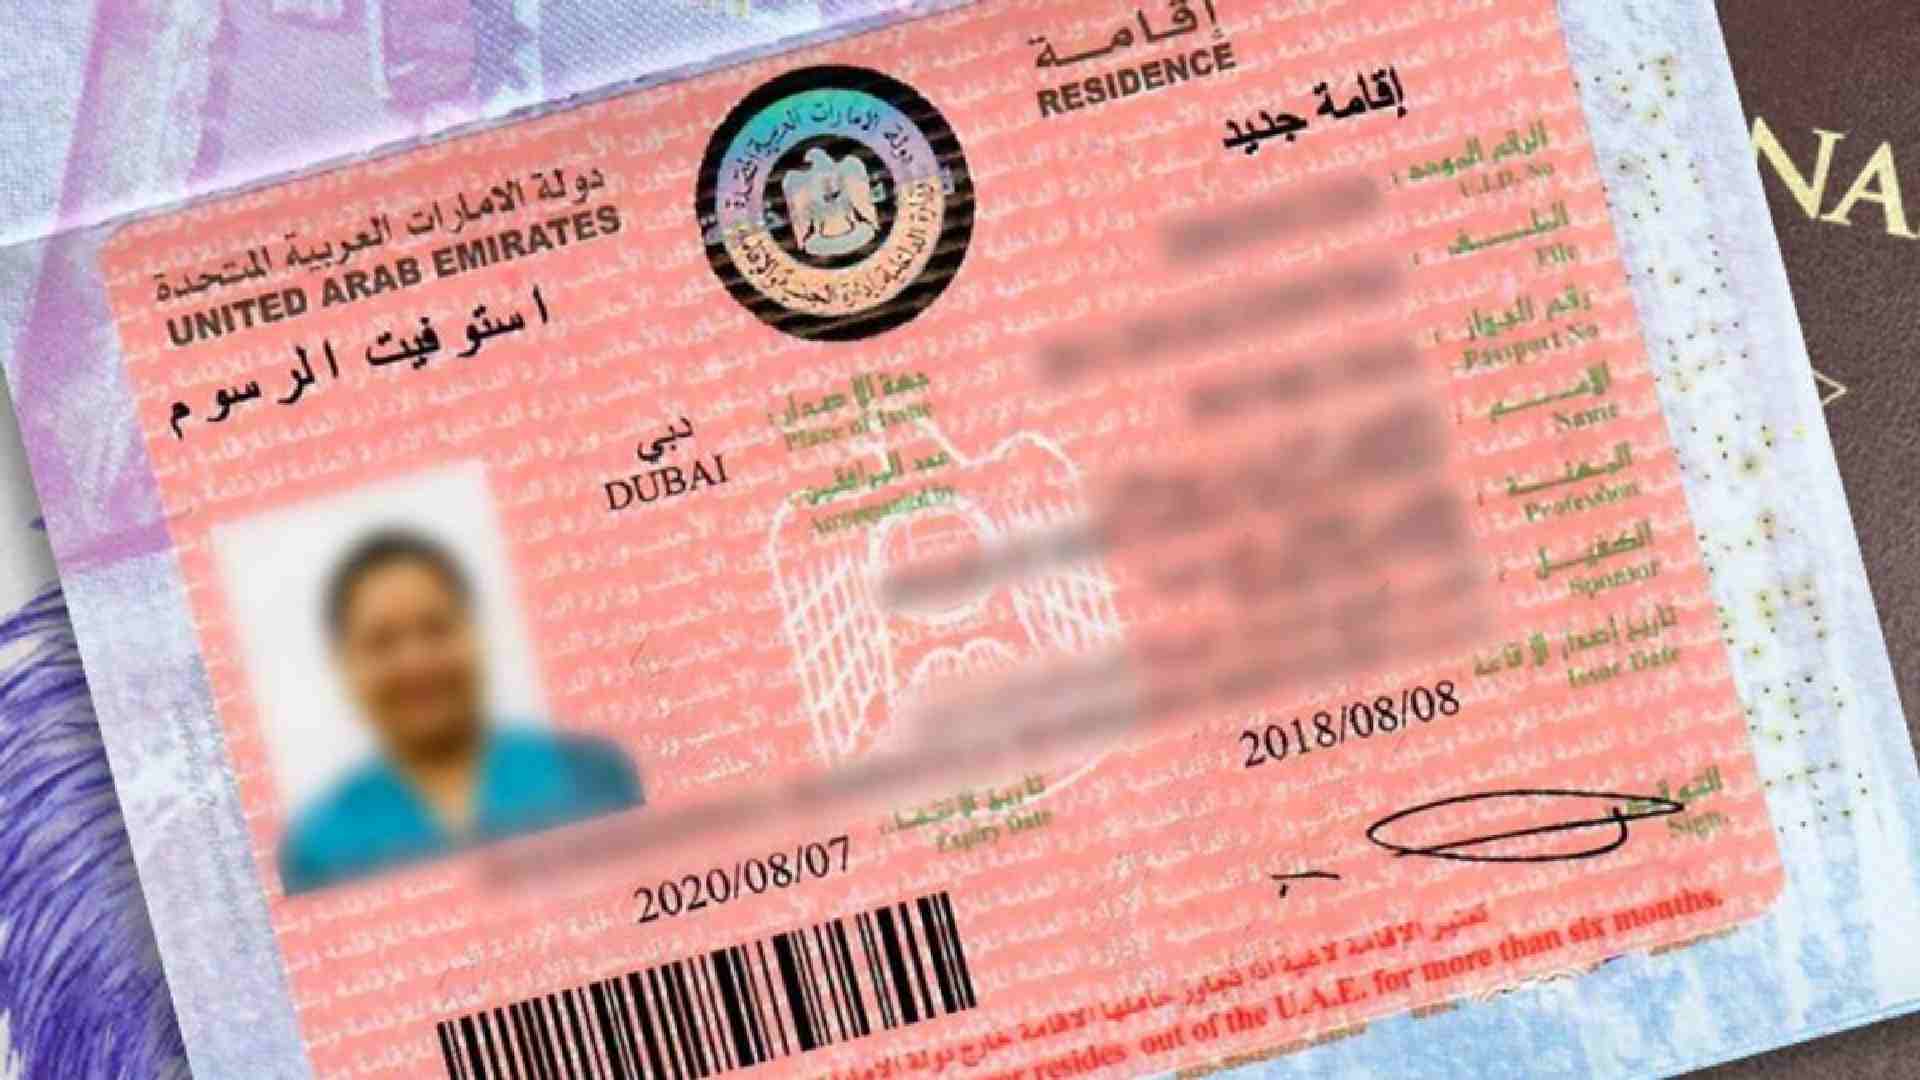 Dubai visa for GCC residents